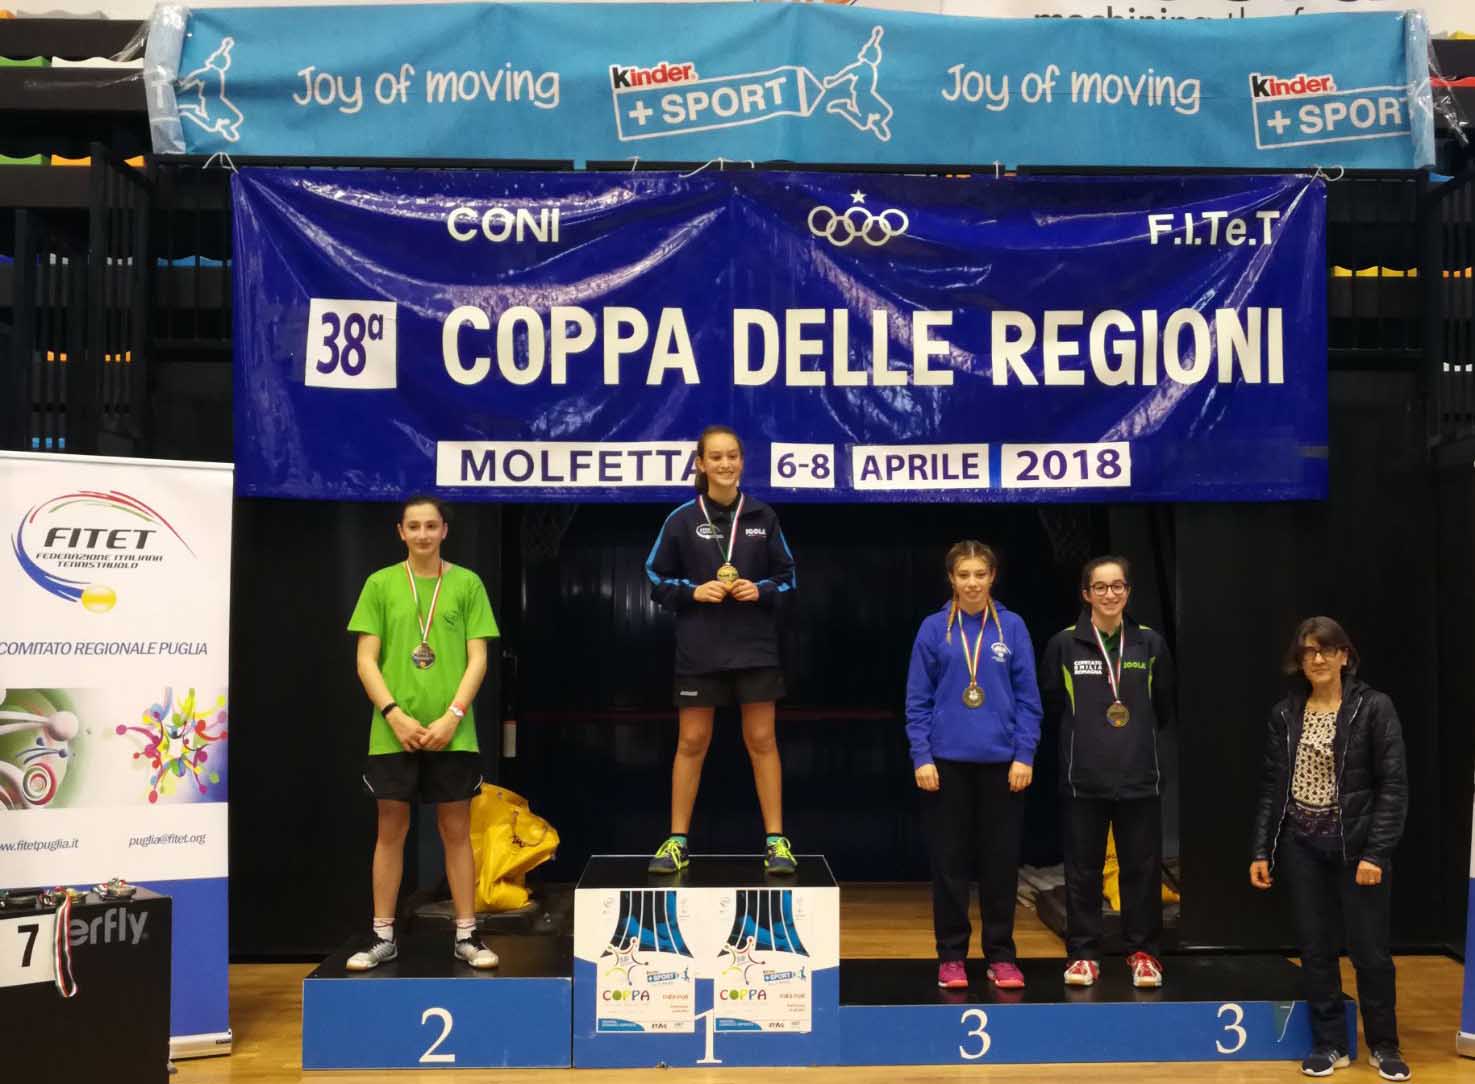 Coppa delle Regioni 2018 podio singolare femminile